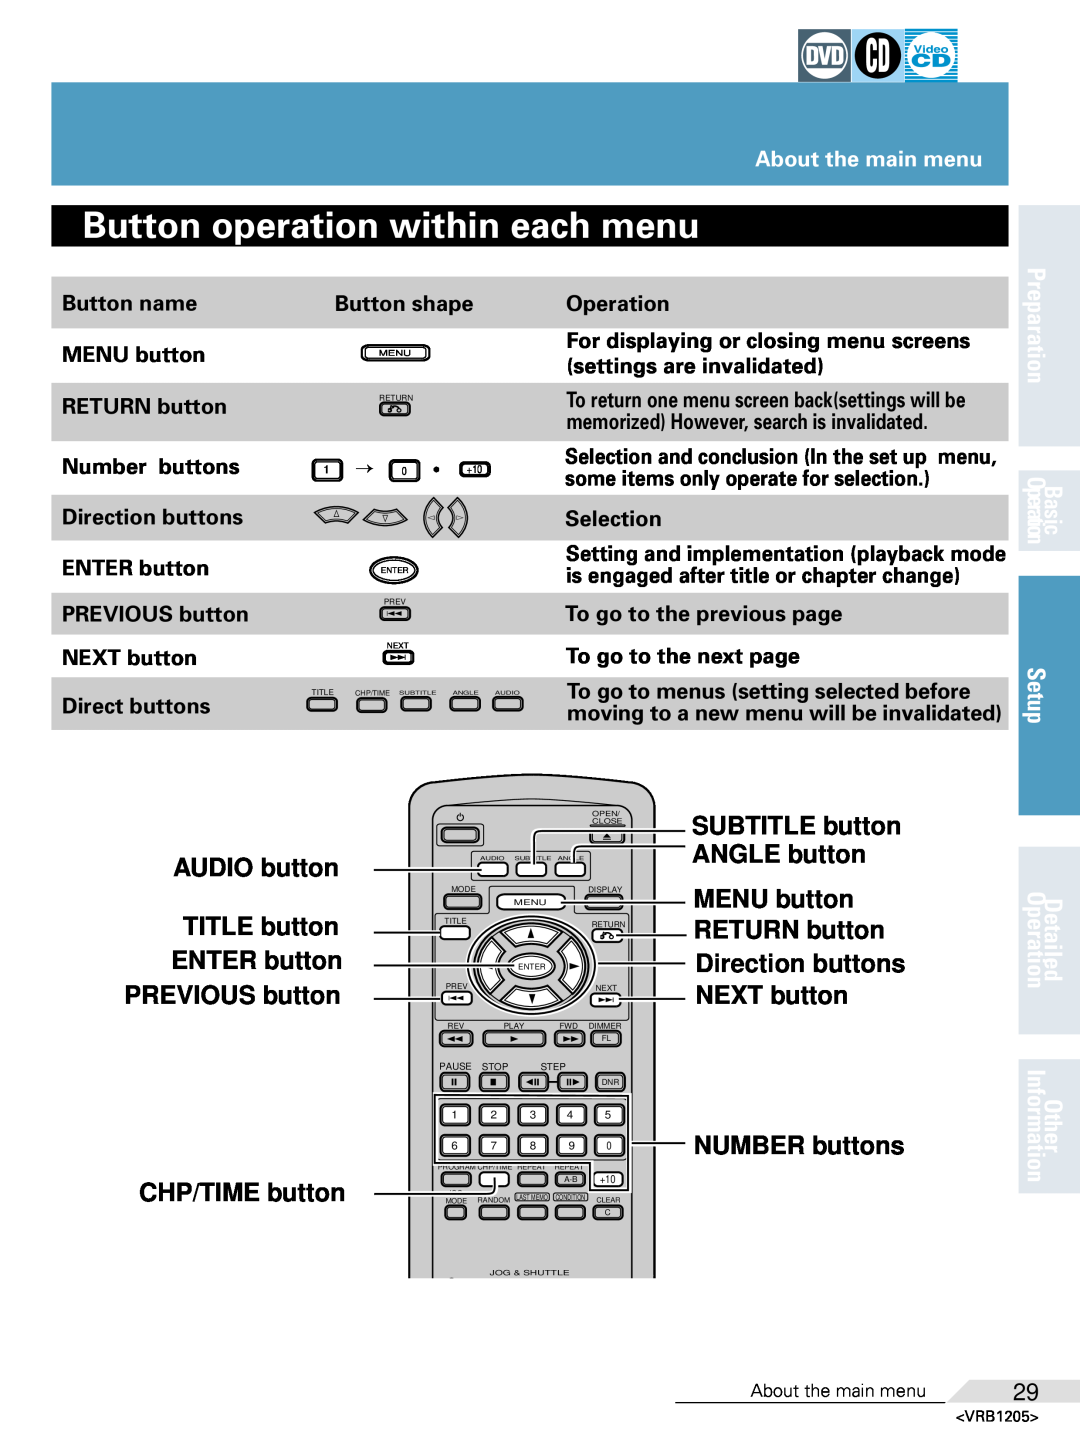 Pioneer DV-05 Button operation within each menu, AUDIO button TITLE button ENTER button PREVIOUS button, CHP/TIME button 